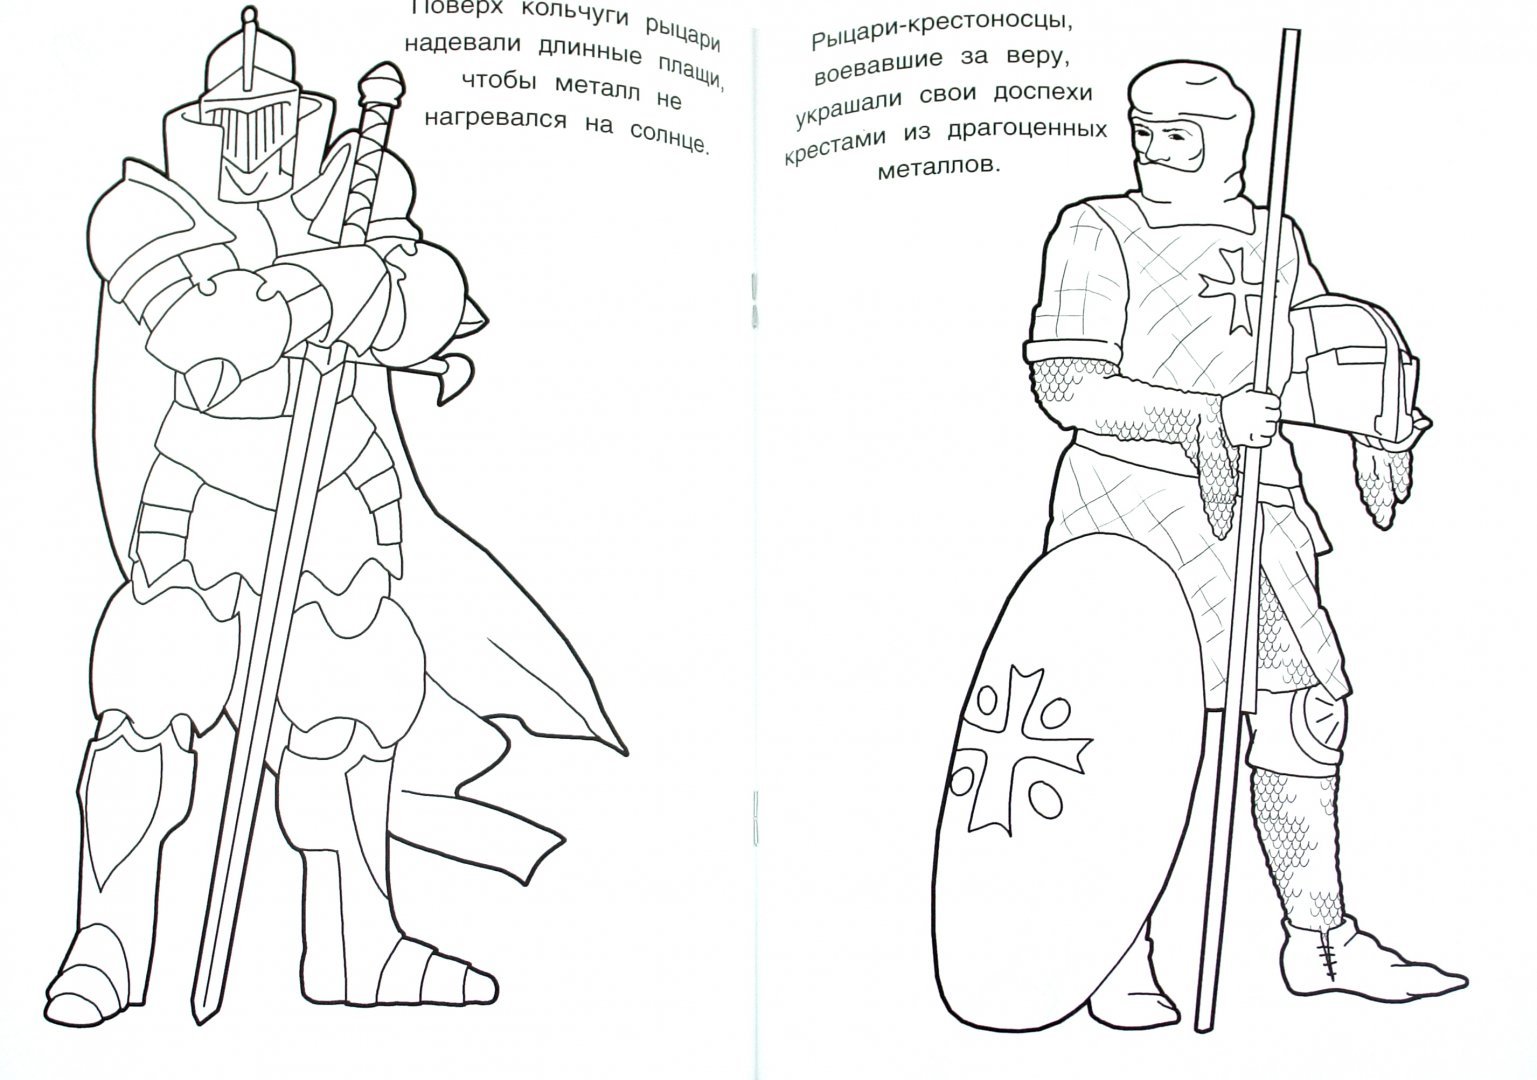 Читать про рыцарей. Рыцари. Раскраска. Раскраска рыцарь для детей. Рыцарь рисунок. Рисунок на тему рыцарство.